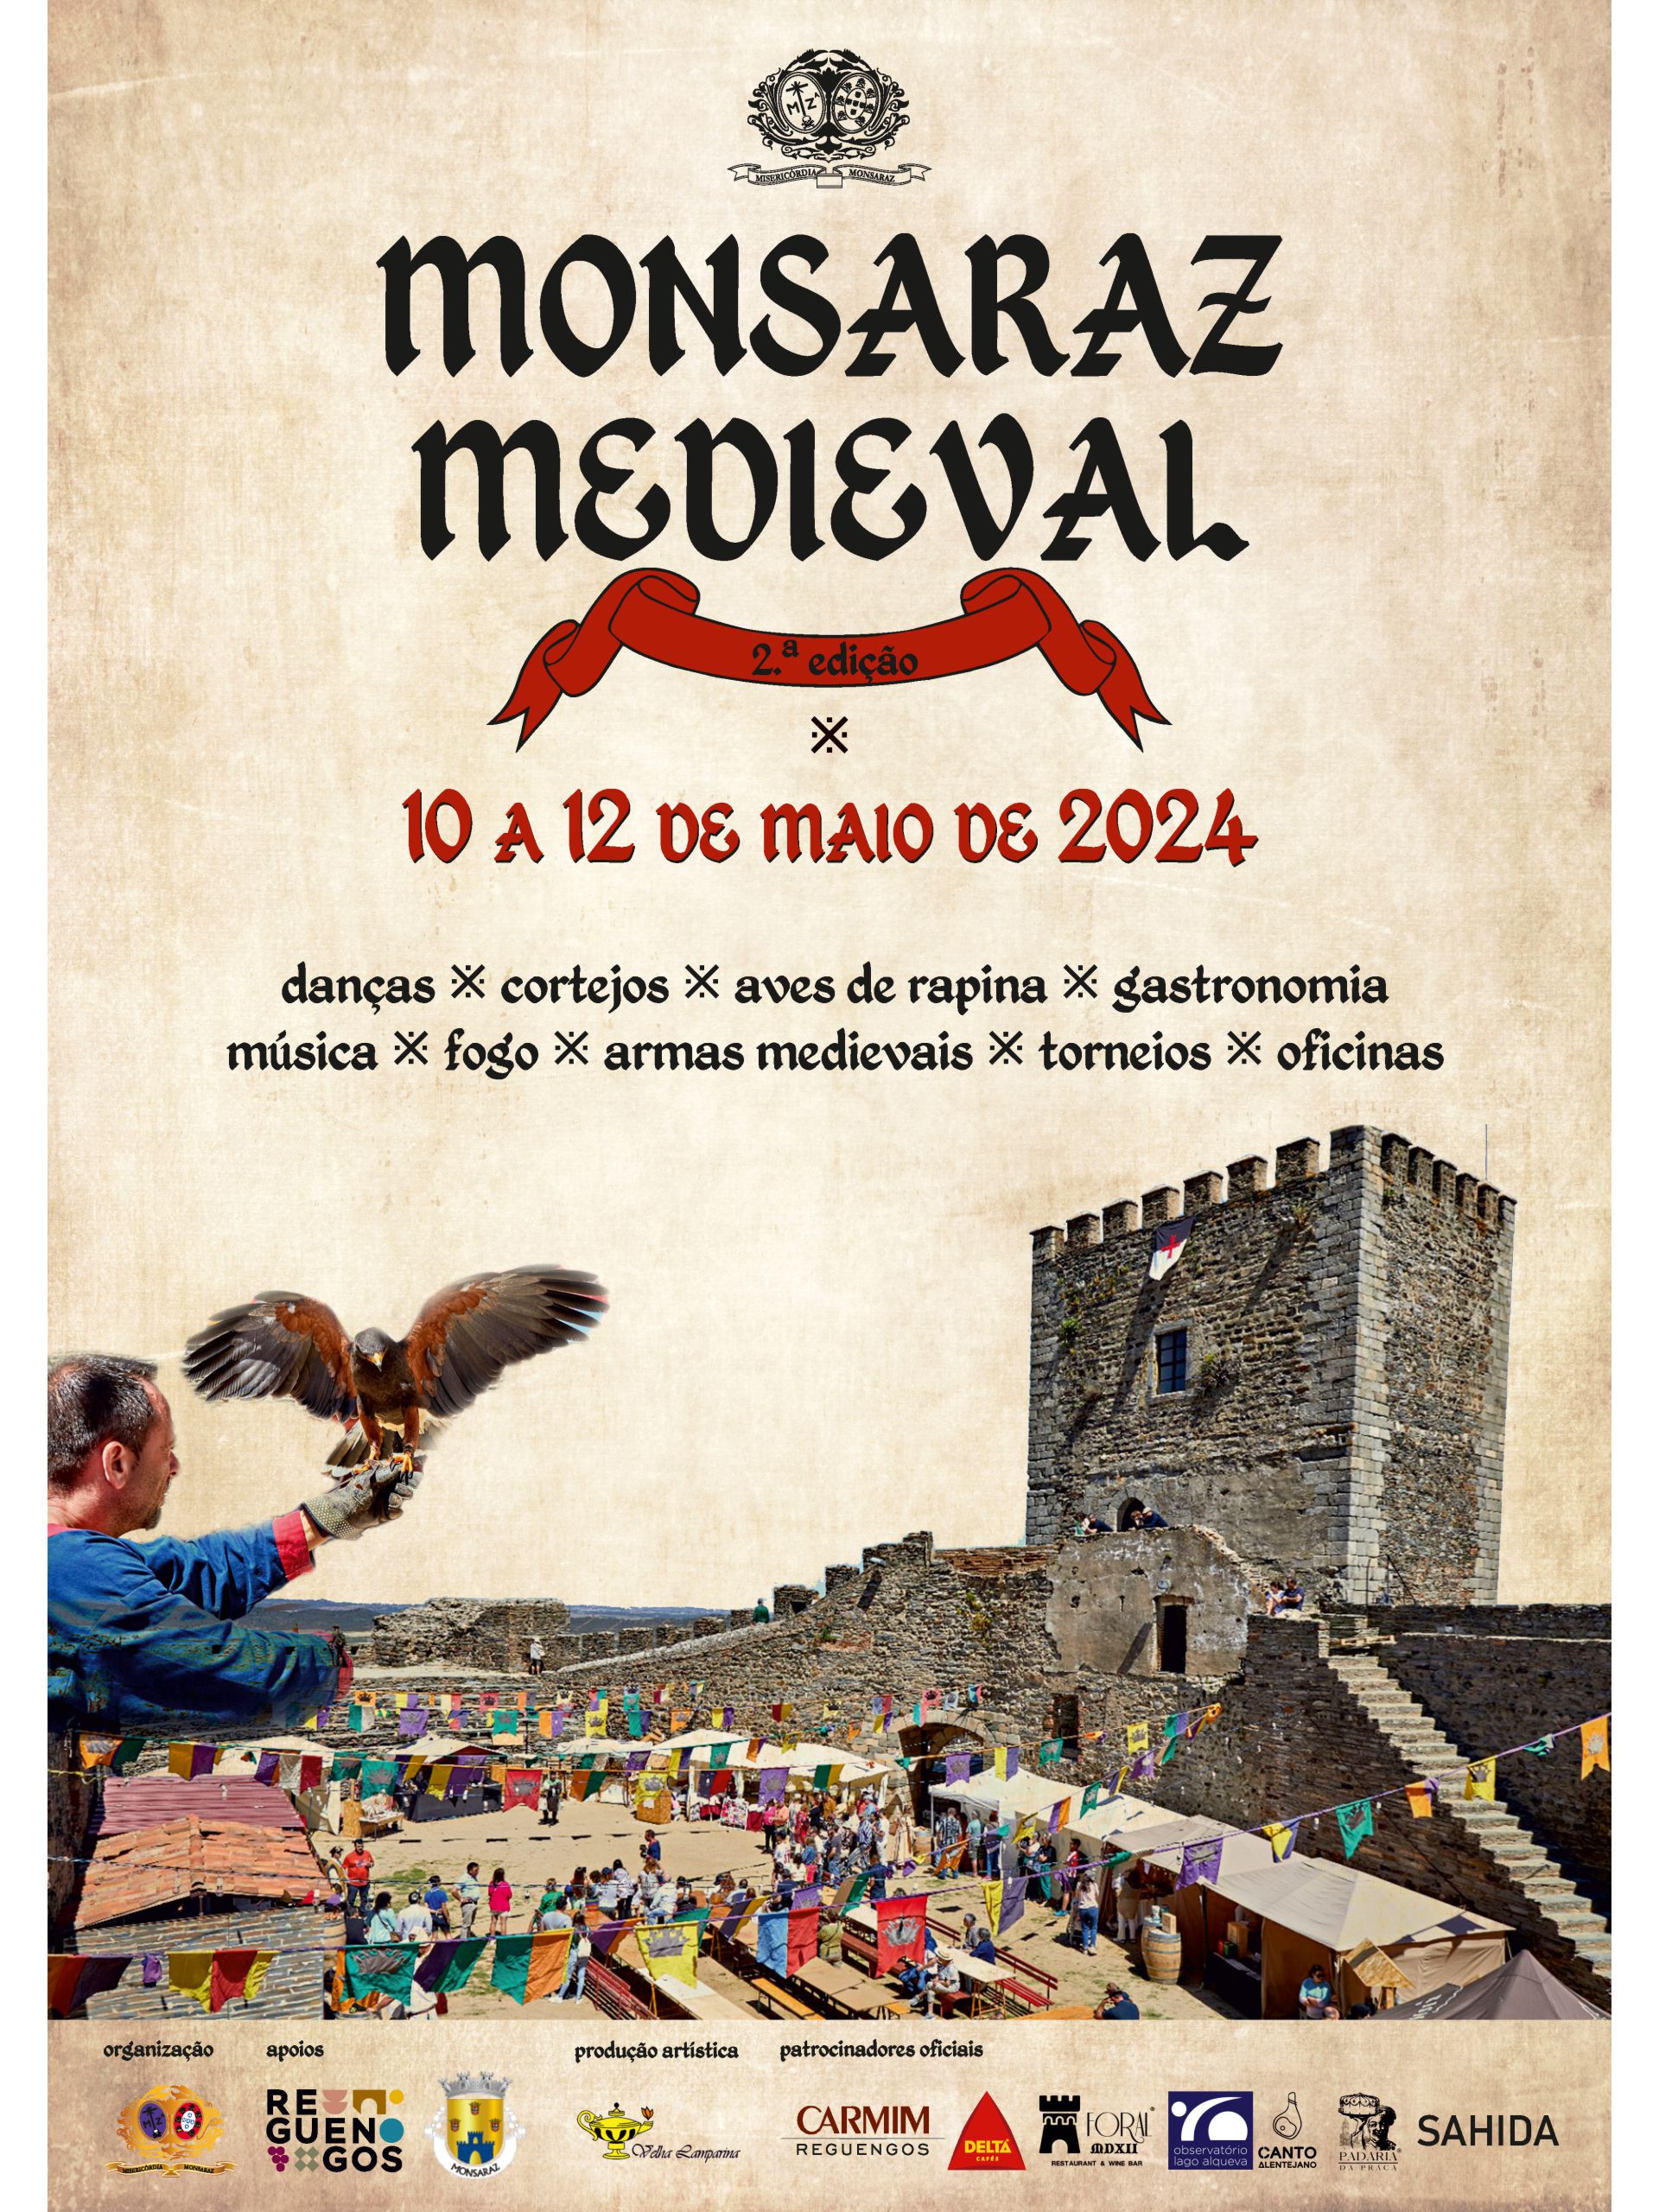 Monsaraz Medieval 2024